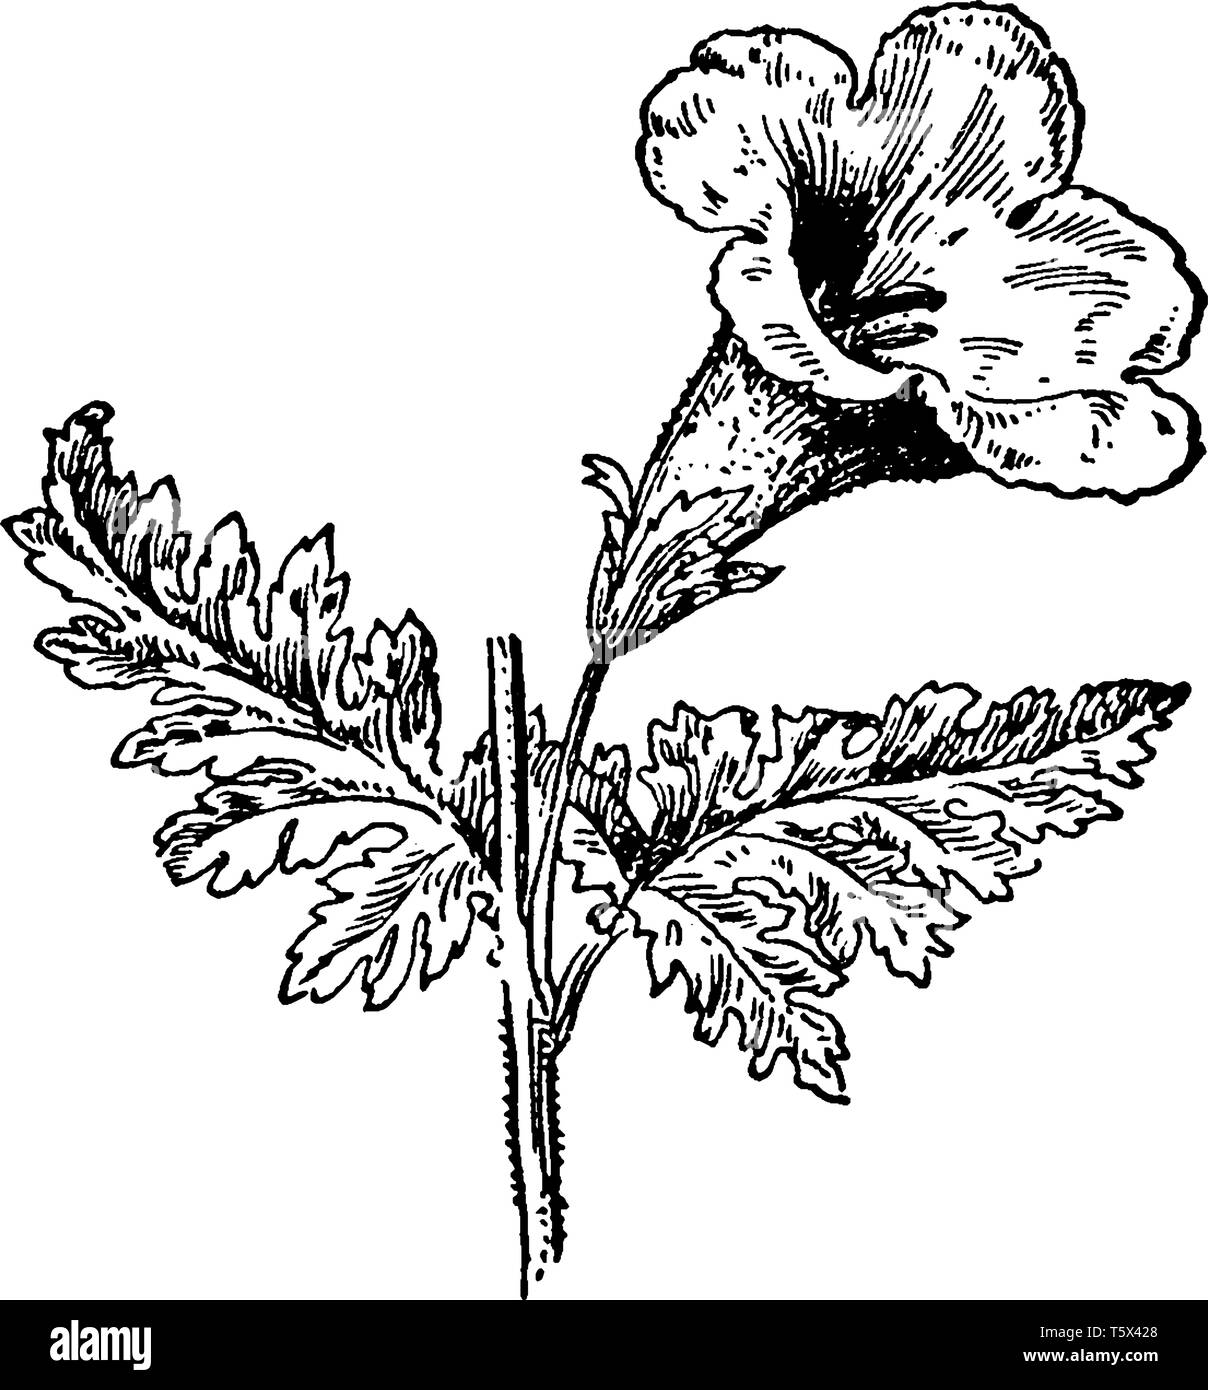 Blume Fingerhut wie eine Posaune geformt fast fünf Blütenblätter. Blume Fingerhut wird in ein Röhrchen fixiert, vintage Strichzeichnung oder Gravur Abbildung. Stock Vektor